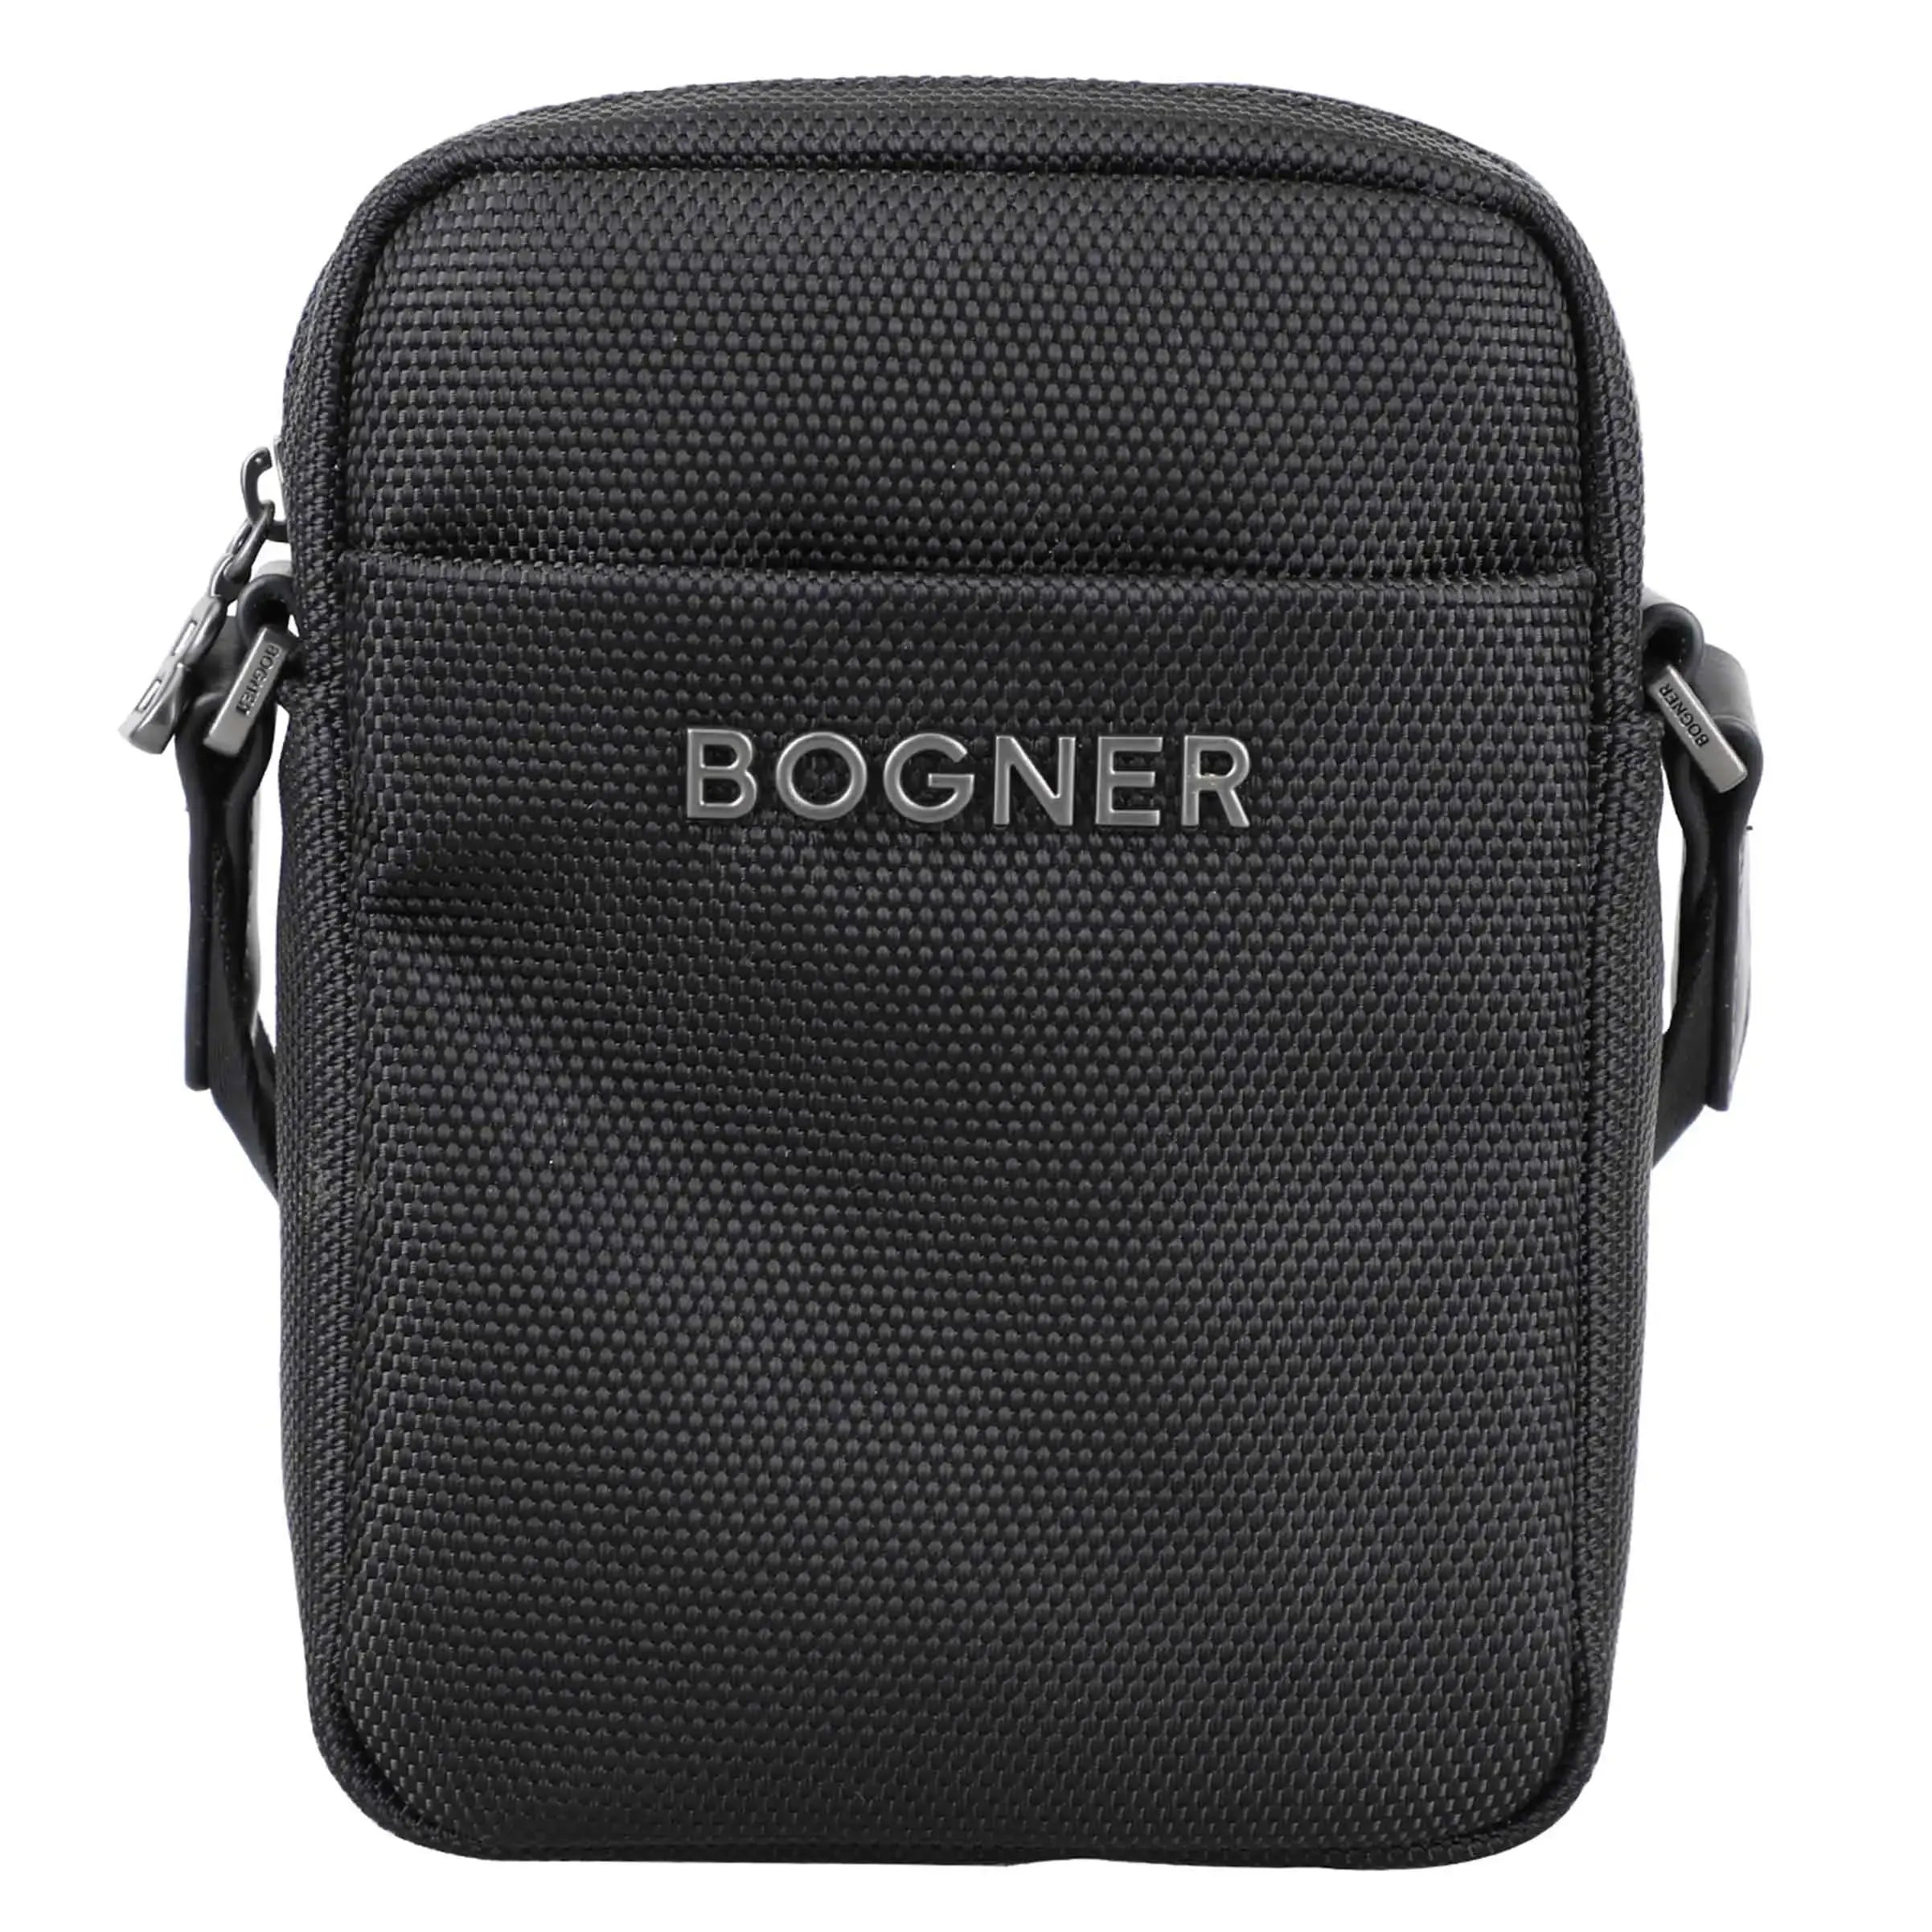 Bogner Keystone Mats Shoulderbag XSVZ - black